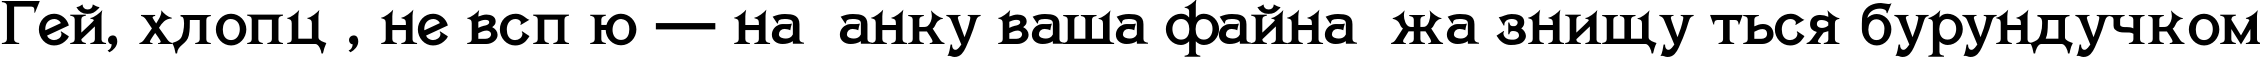 Пример написания шрифтом Savin TYGRA текста на украинском